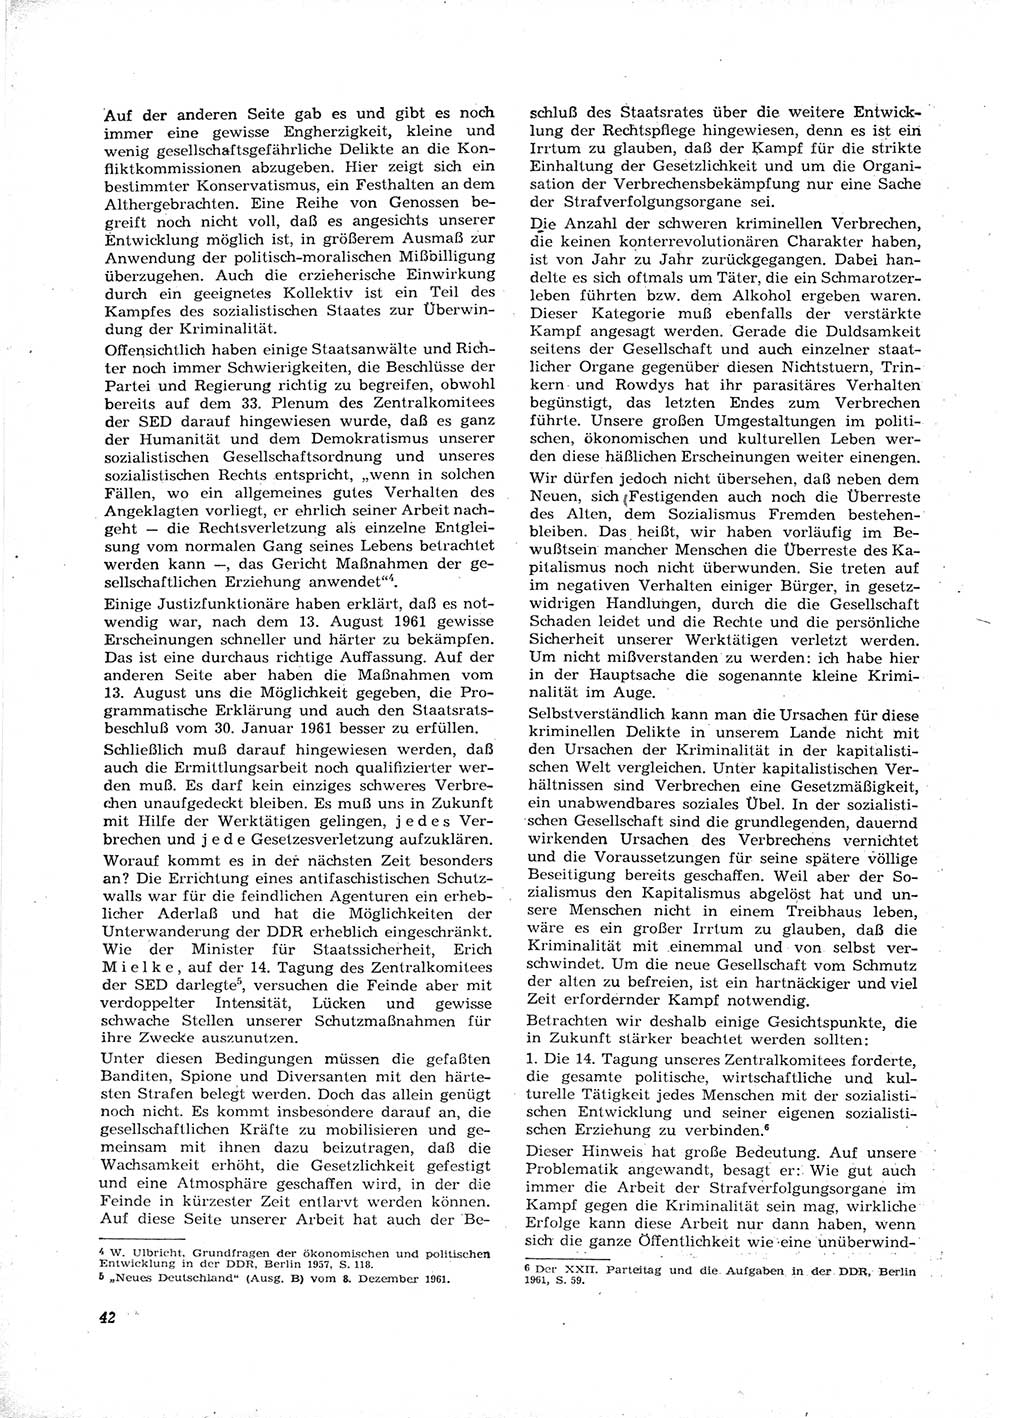 Neue Justiz (NJ), Zeitschrift für Recht und Rechtswissenschaft [Deutsche Demokratische Republik (DDR)], 16. Jahrgang 1962, Seite 42 (NJ DDR 1962, S. 42)